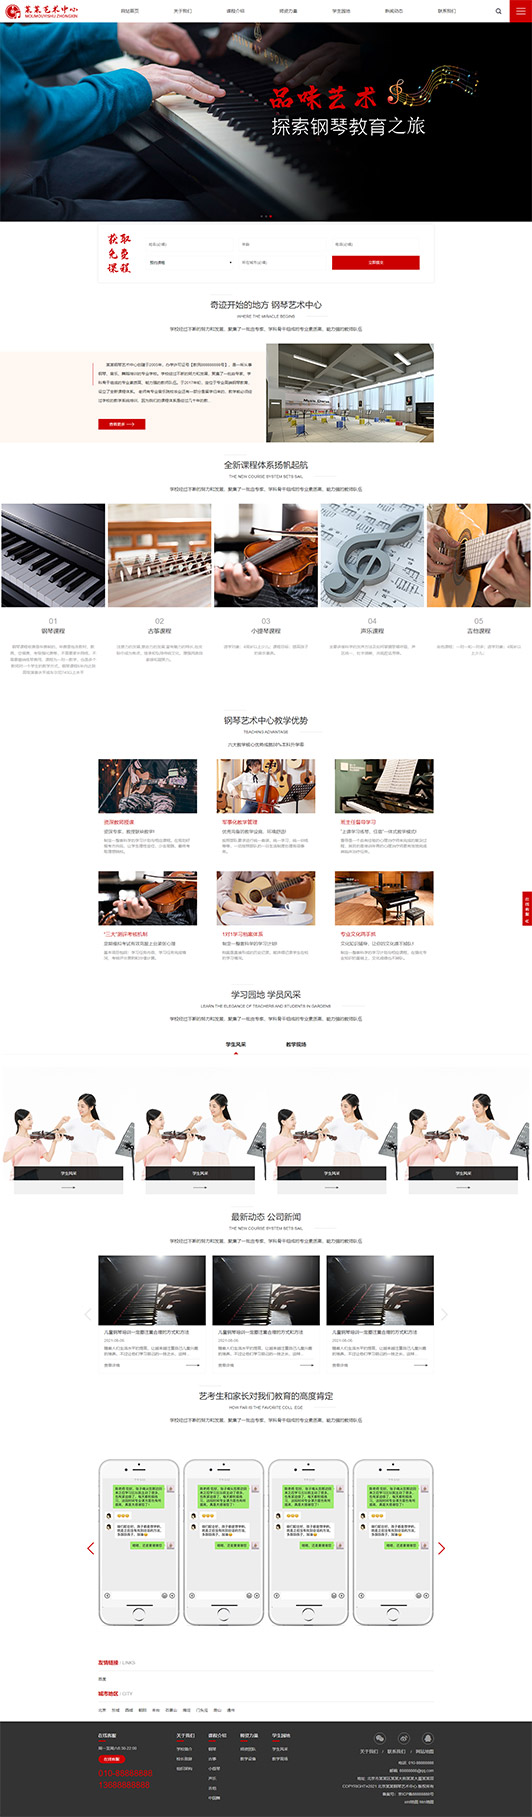 达州钢琴艺术培训公司响应式企业网站